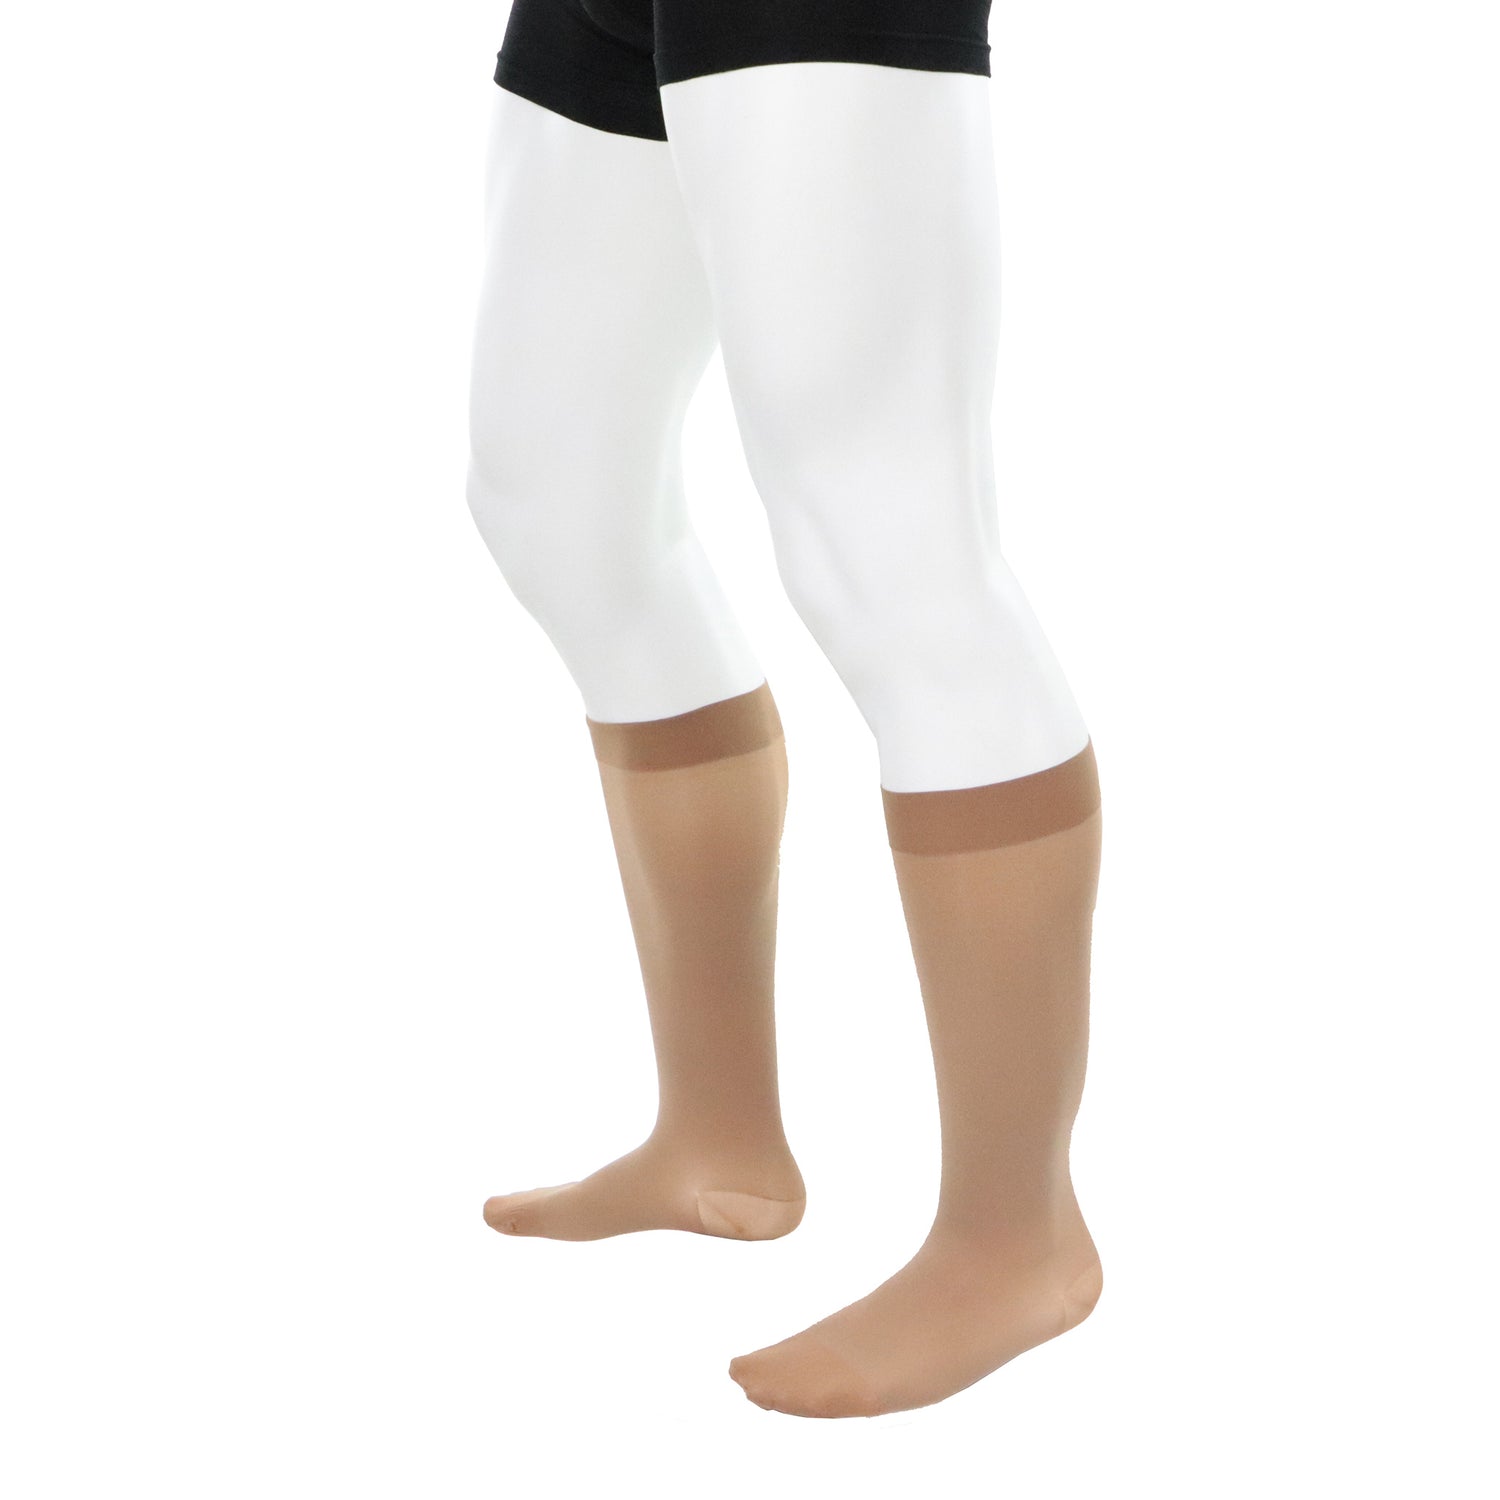 Knee high compression socks for men 30-40 mmhg beige natural left side view